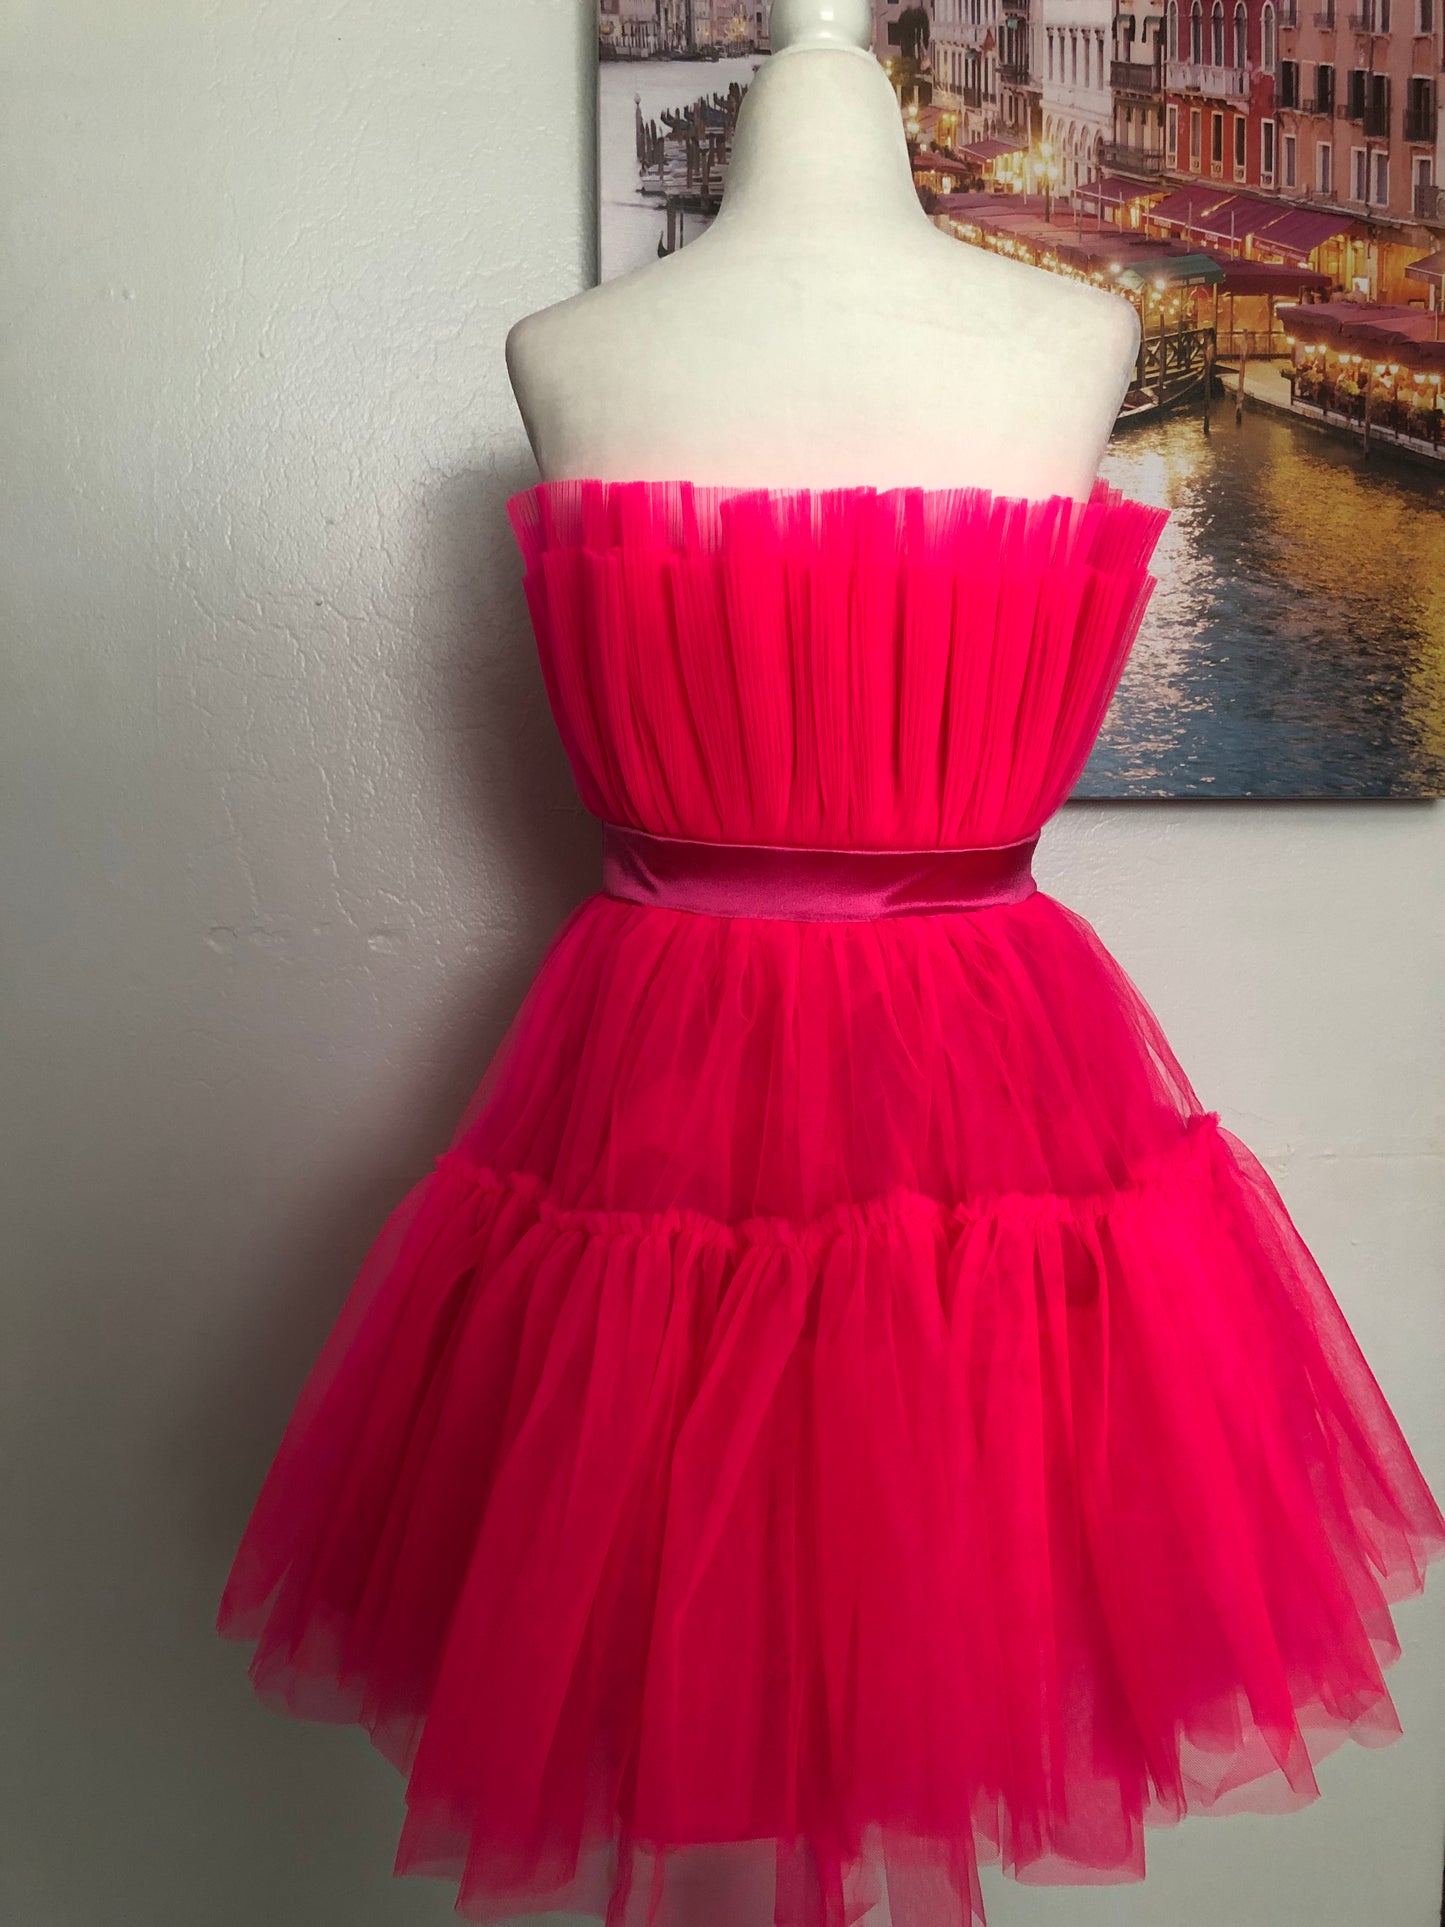 Pop of Pink Dress